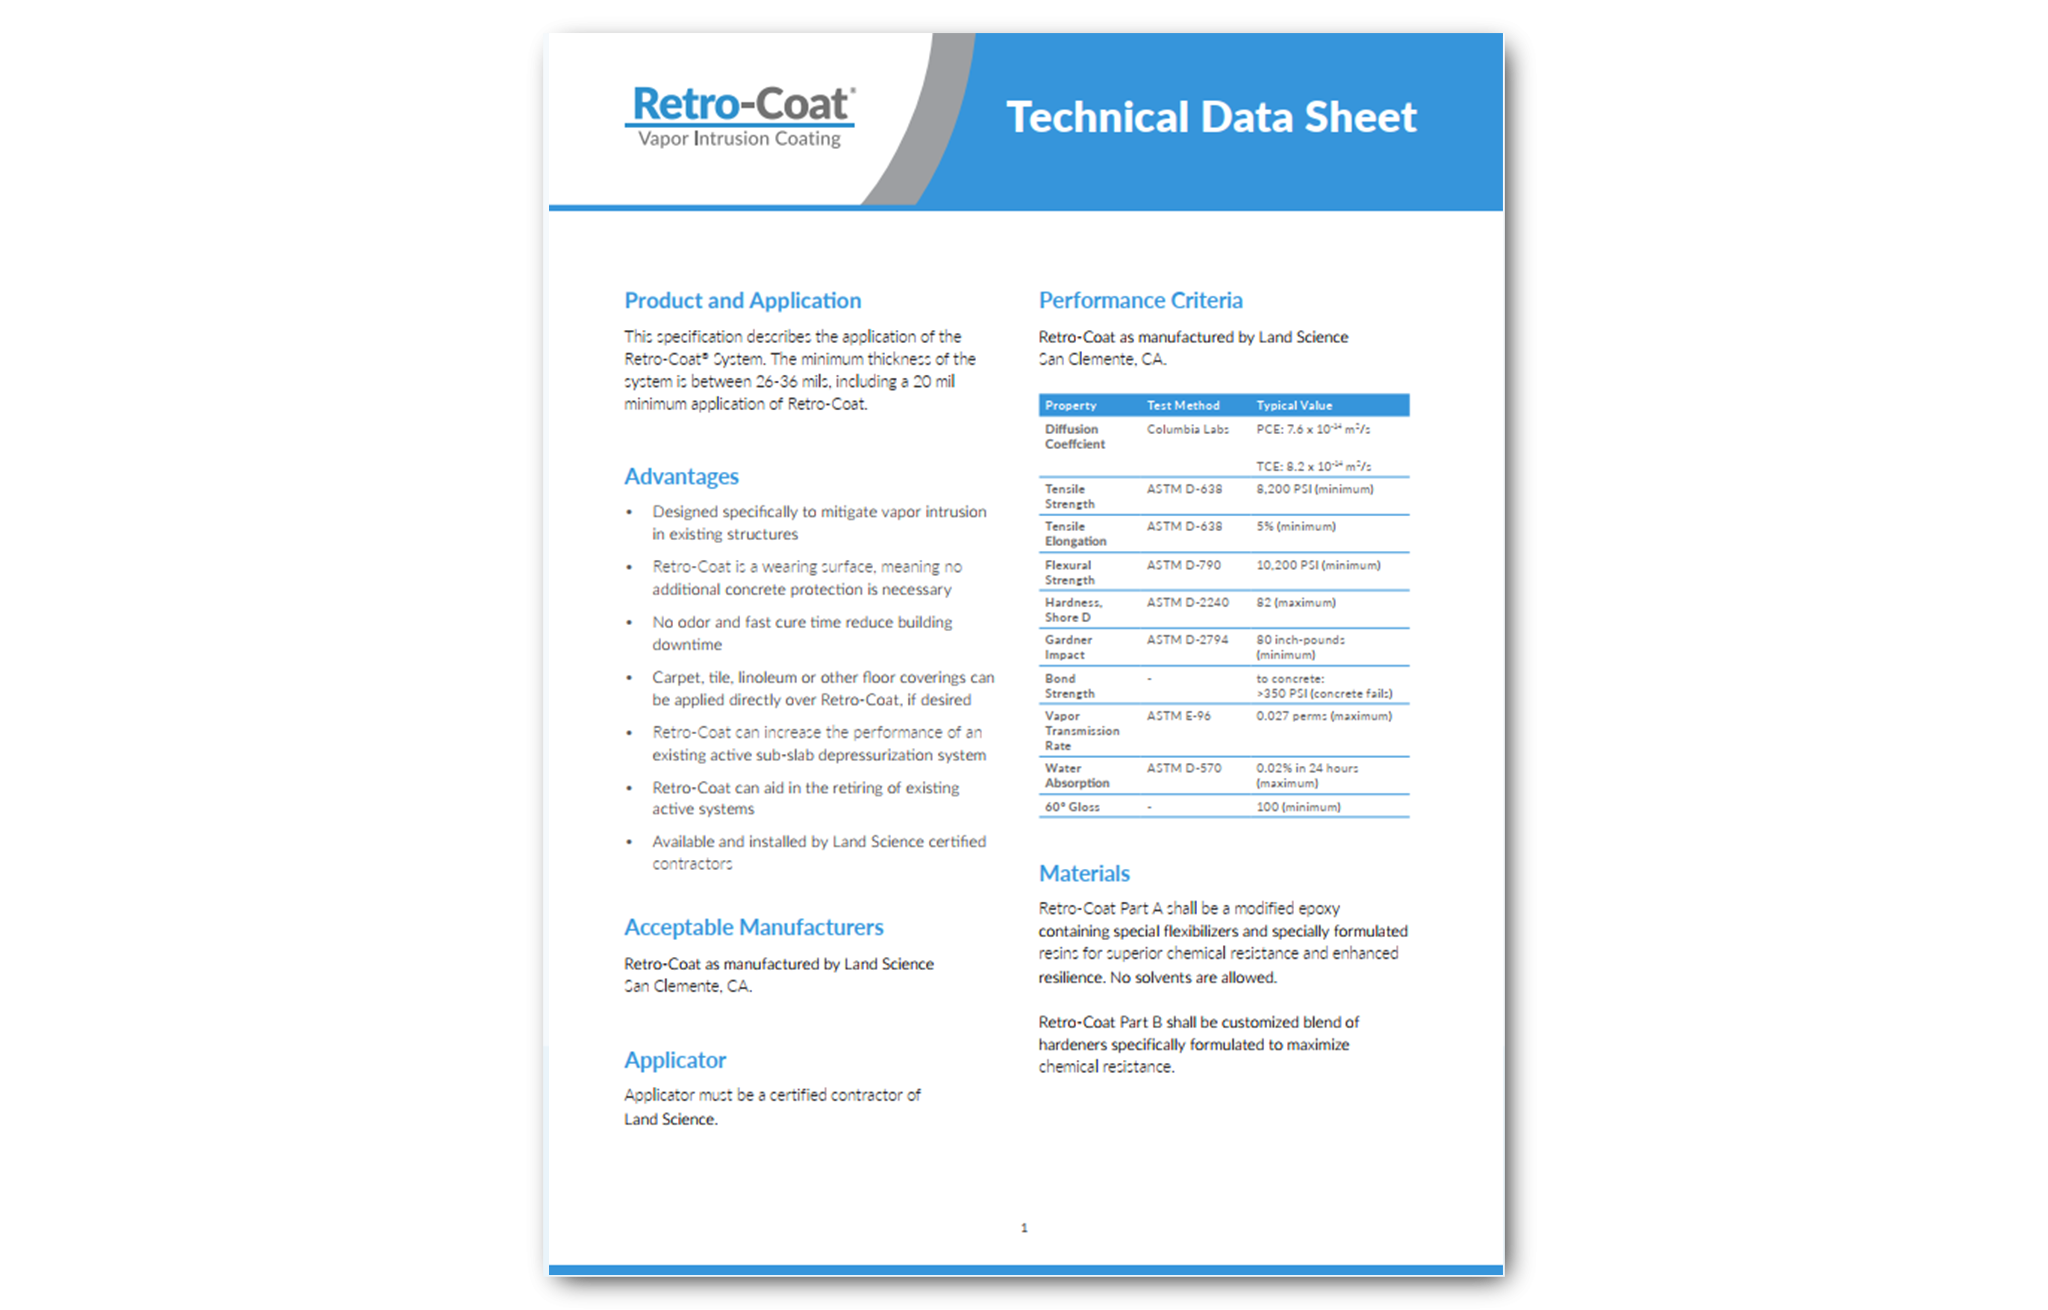 Retro-Coat Technical Data Sheet